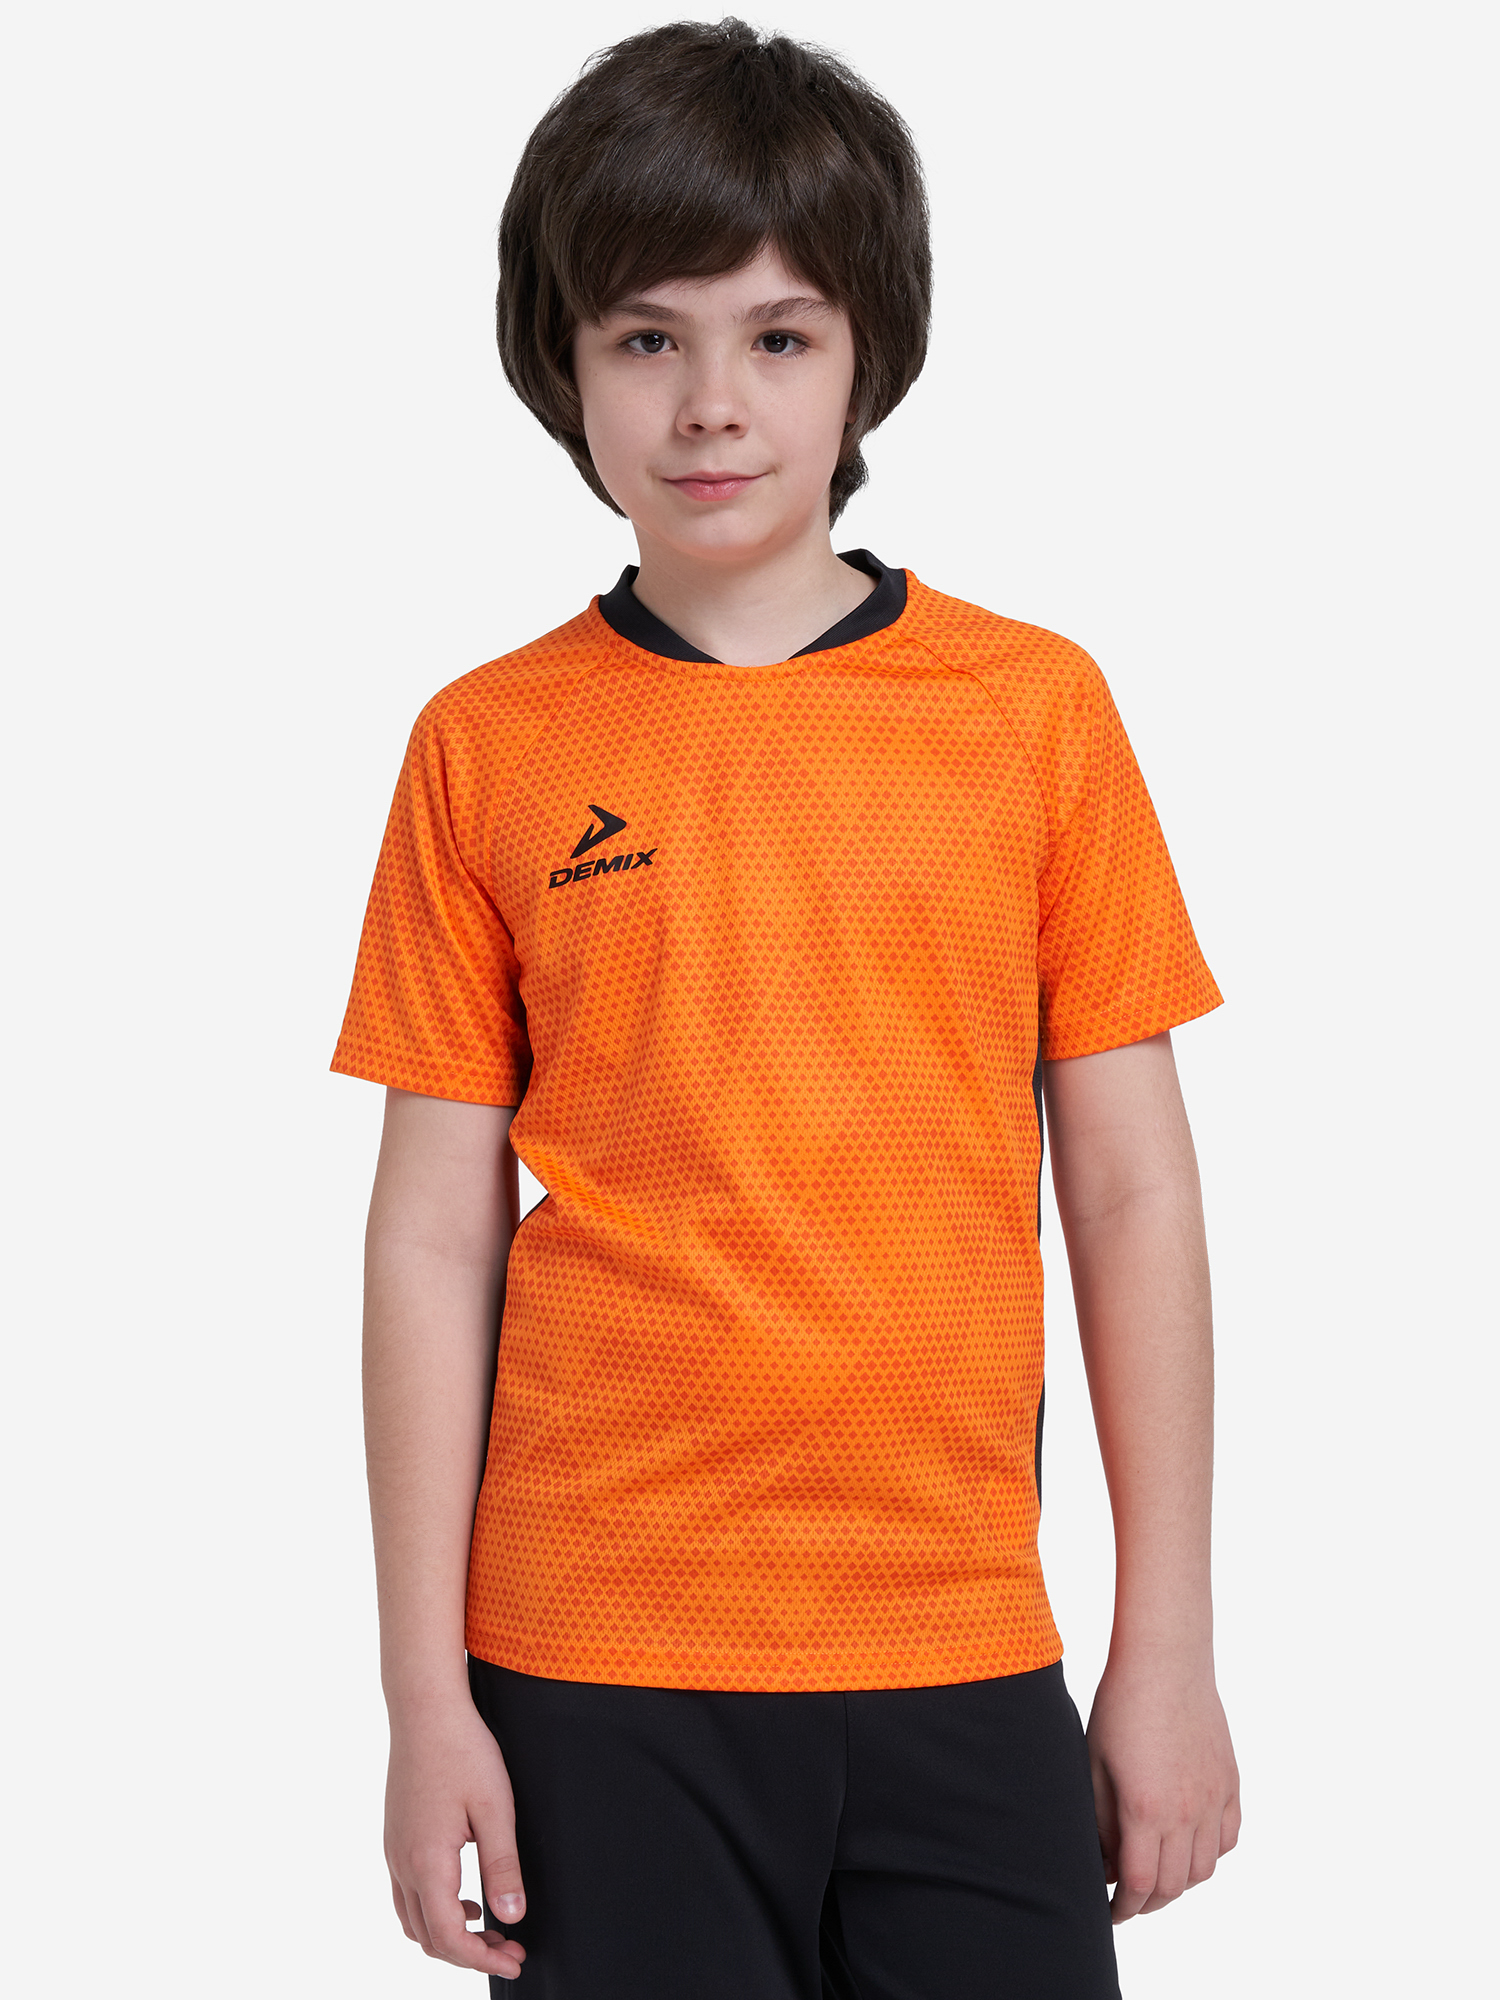 Футболка для мальчиков Demix Strike, Оранжевый футболка для мальчиков demix legacy оранжевый